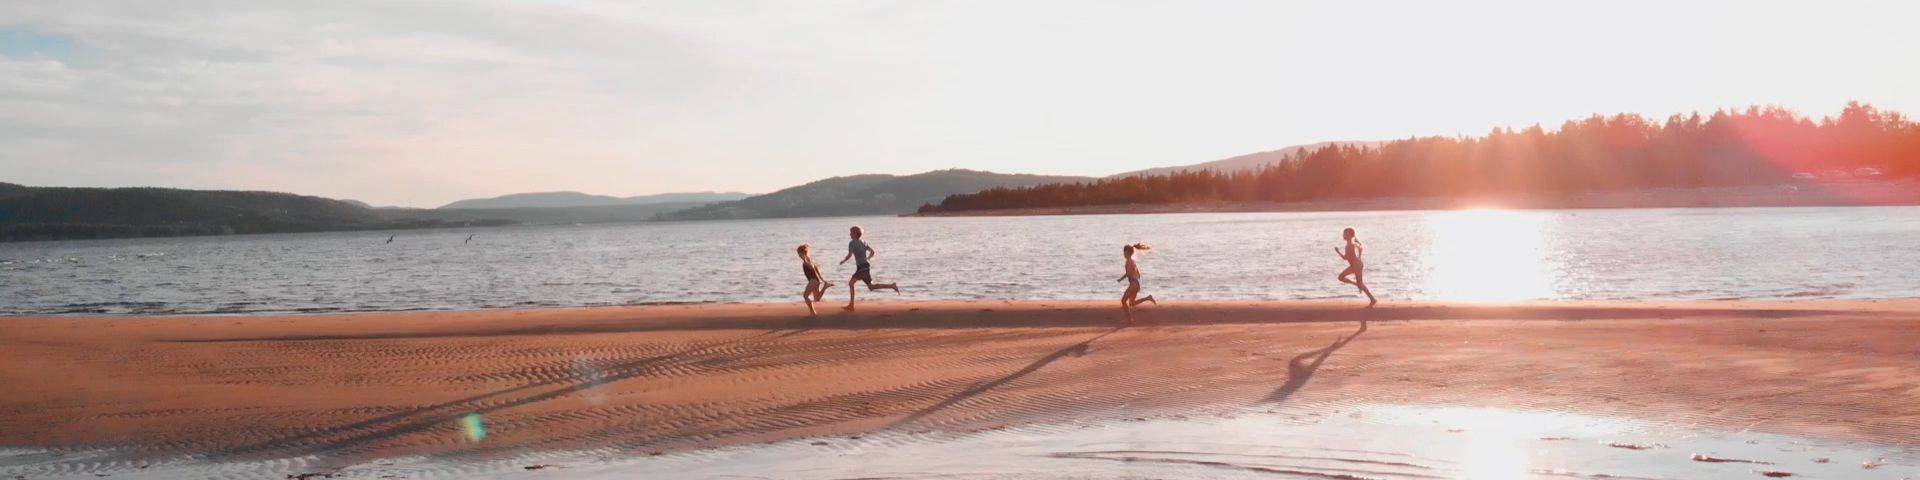 Des enfants courent sur une flèche de sable au coucher de soleil.